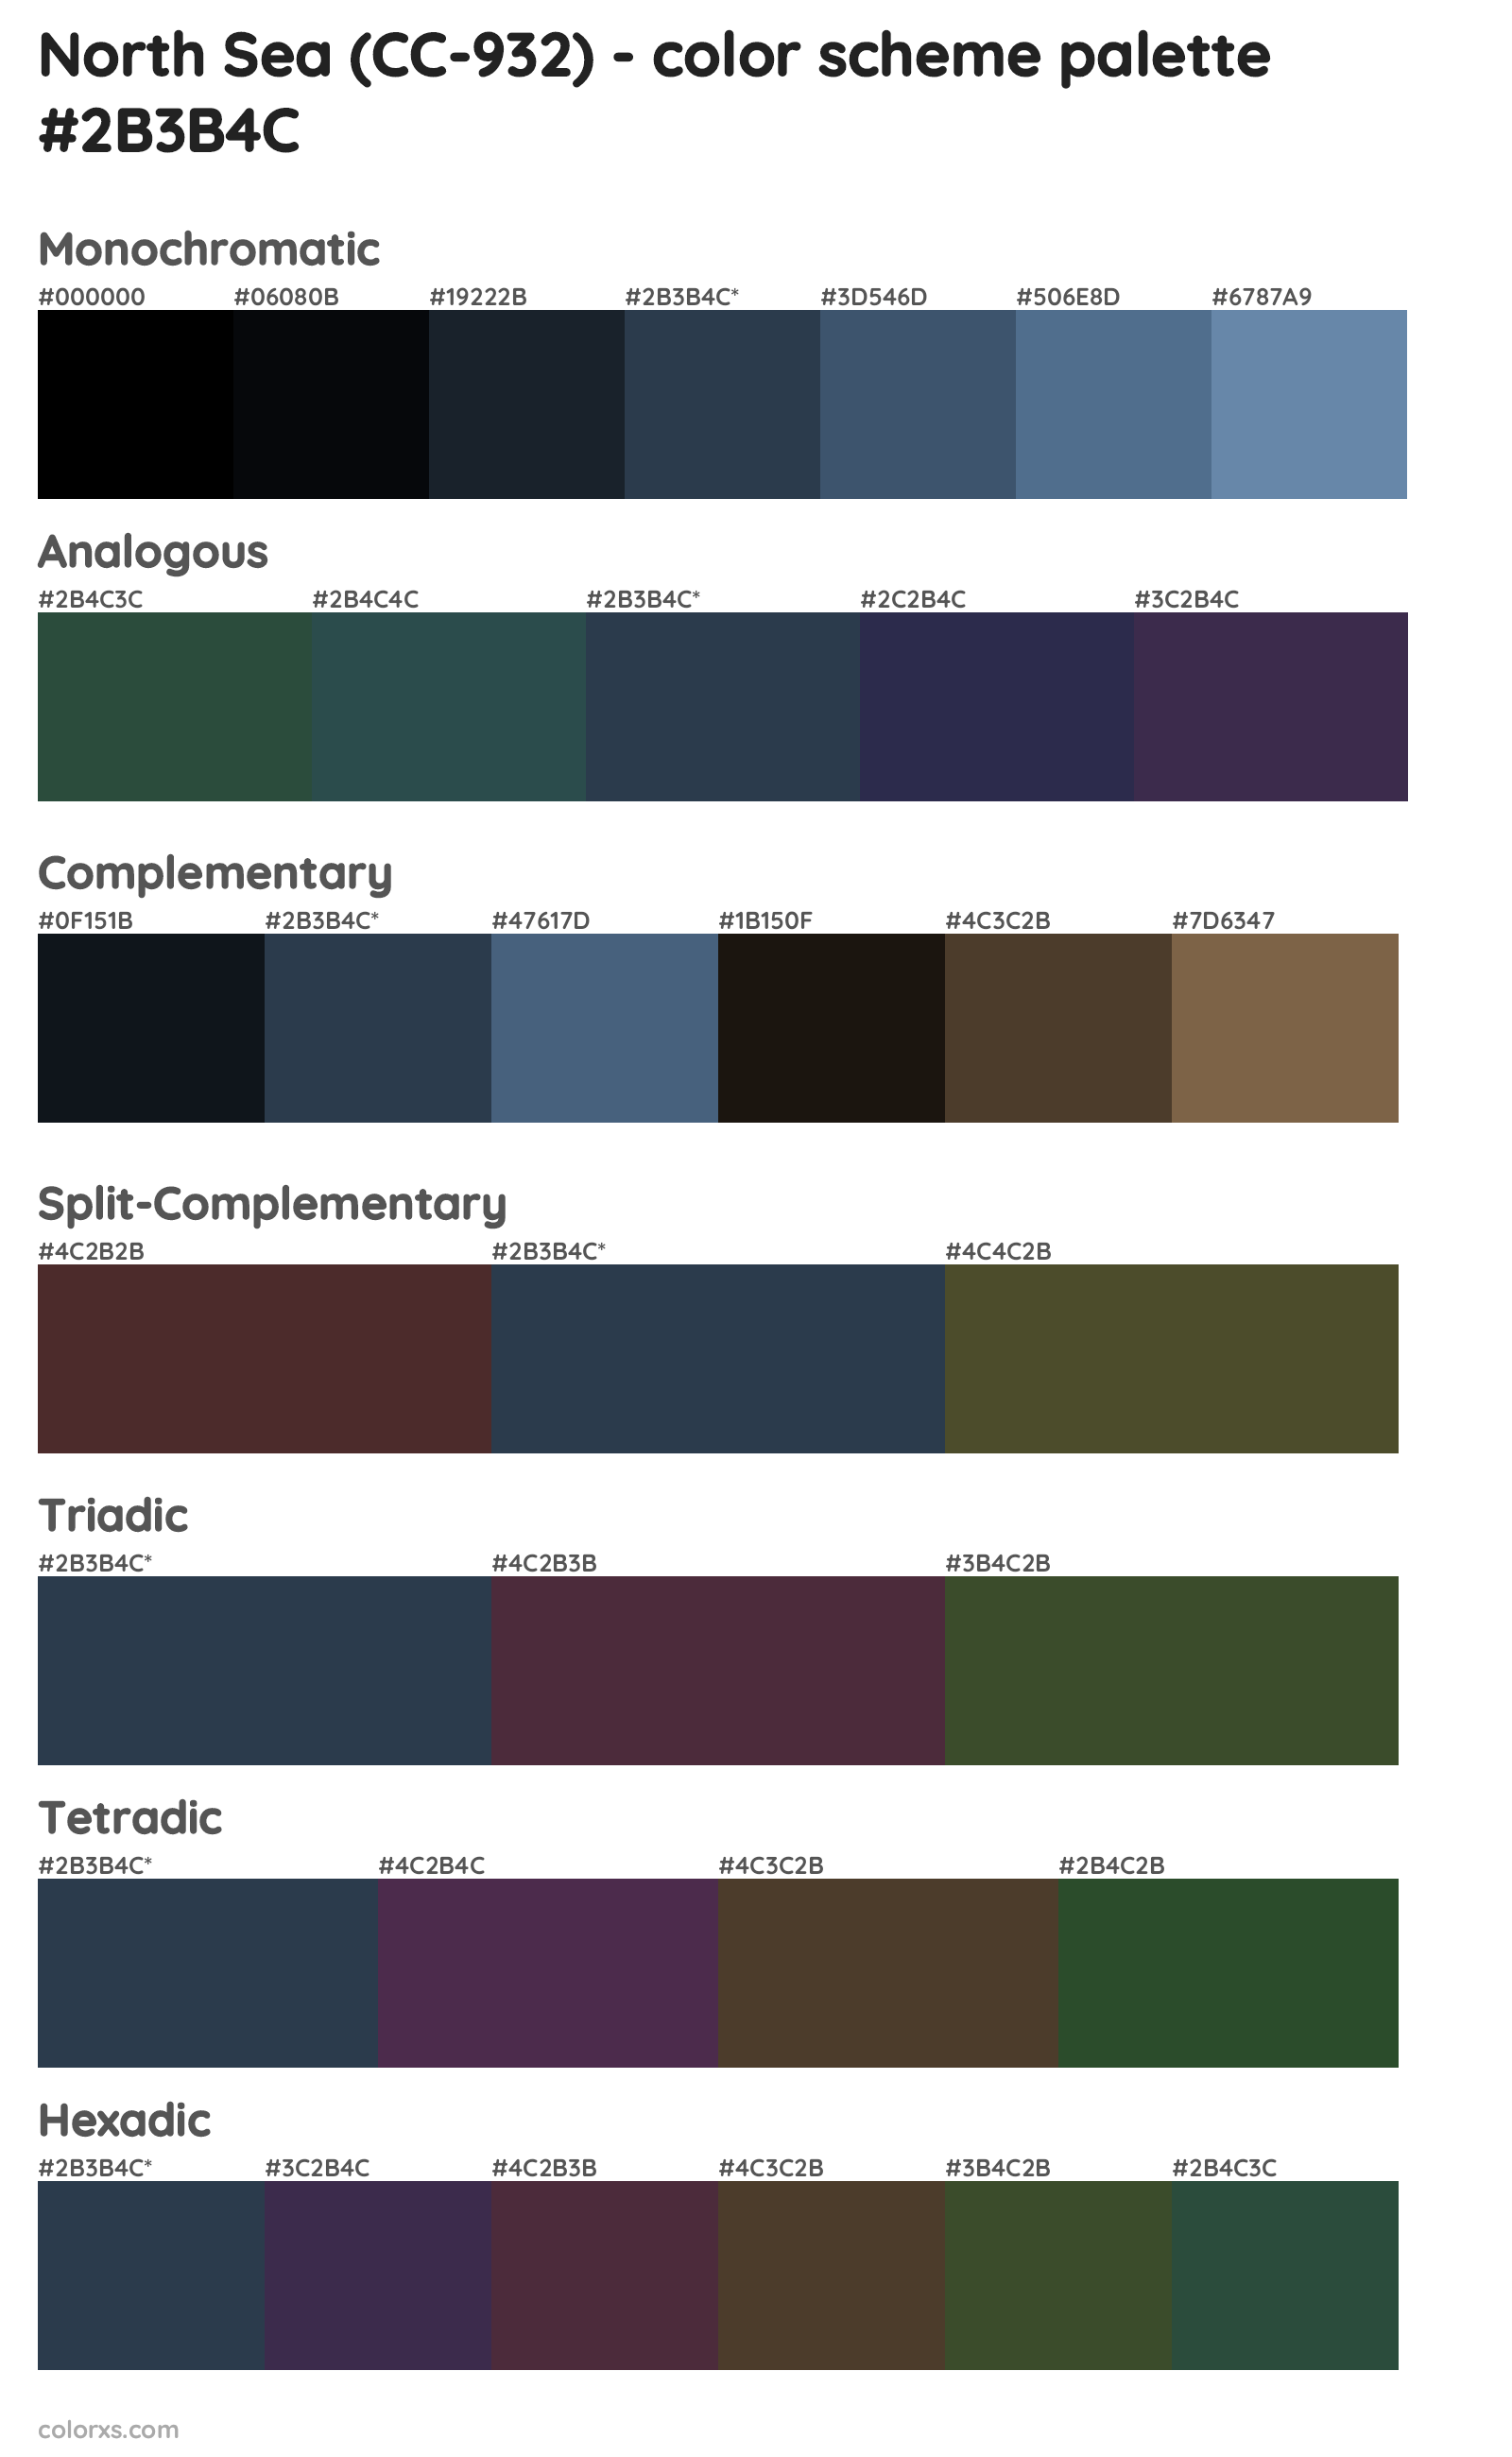 North Sea (CC-932) Color Scheme Palettes